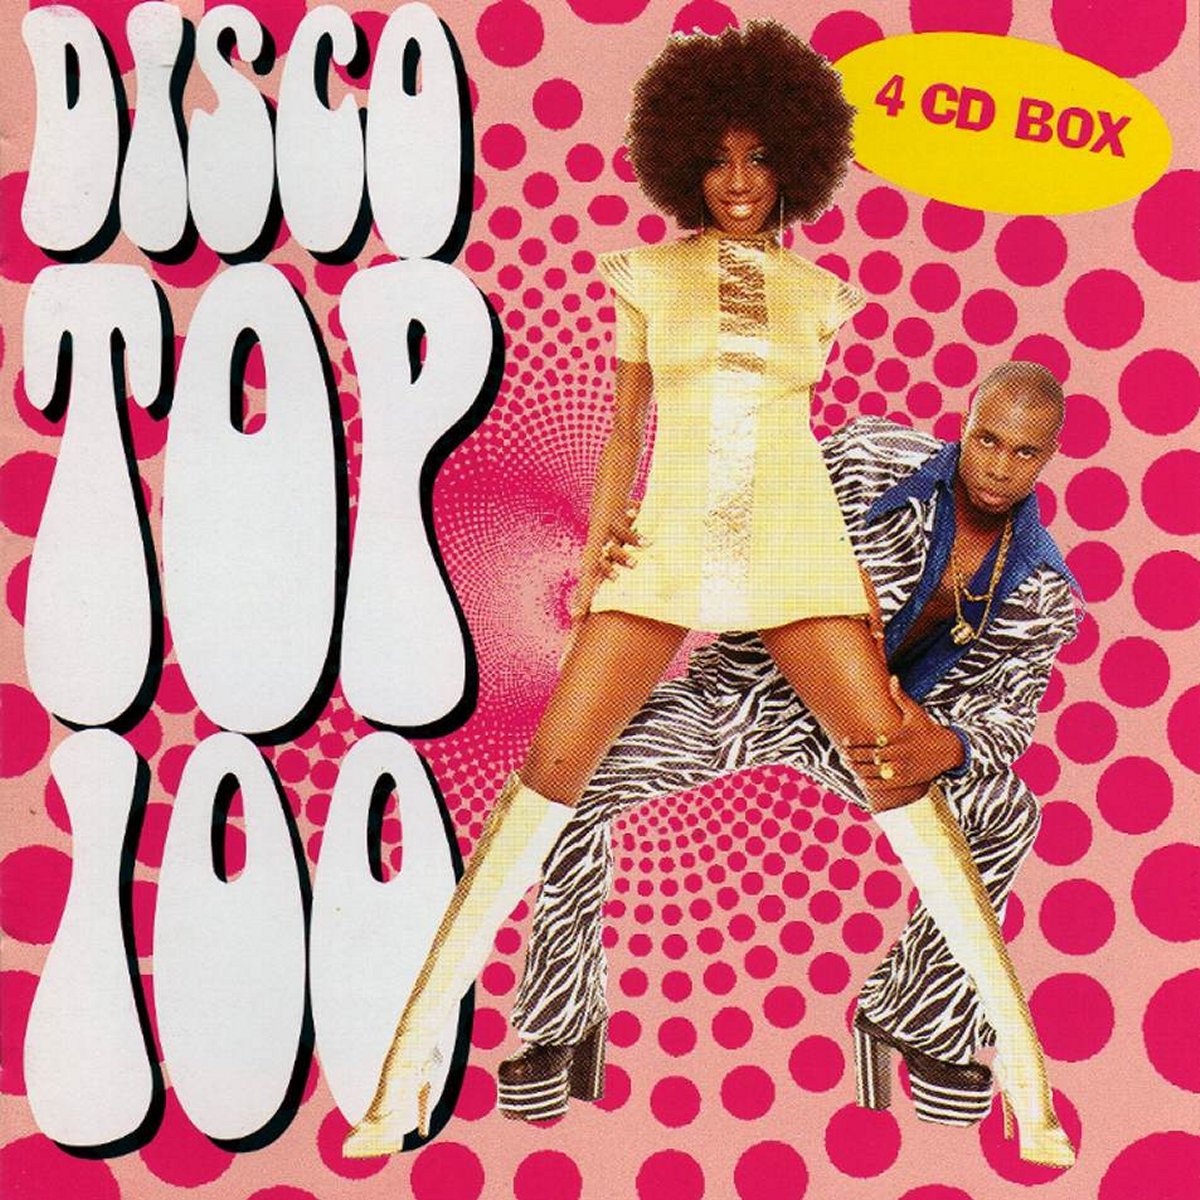 Disco Top 100 (4 CD's